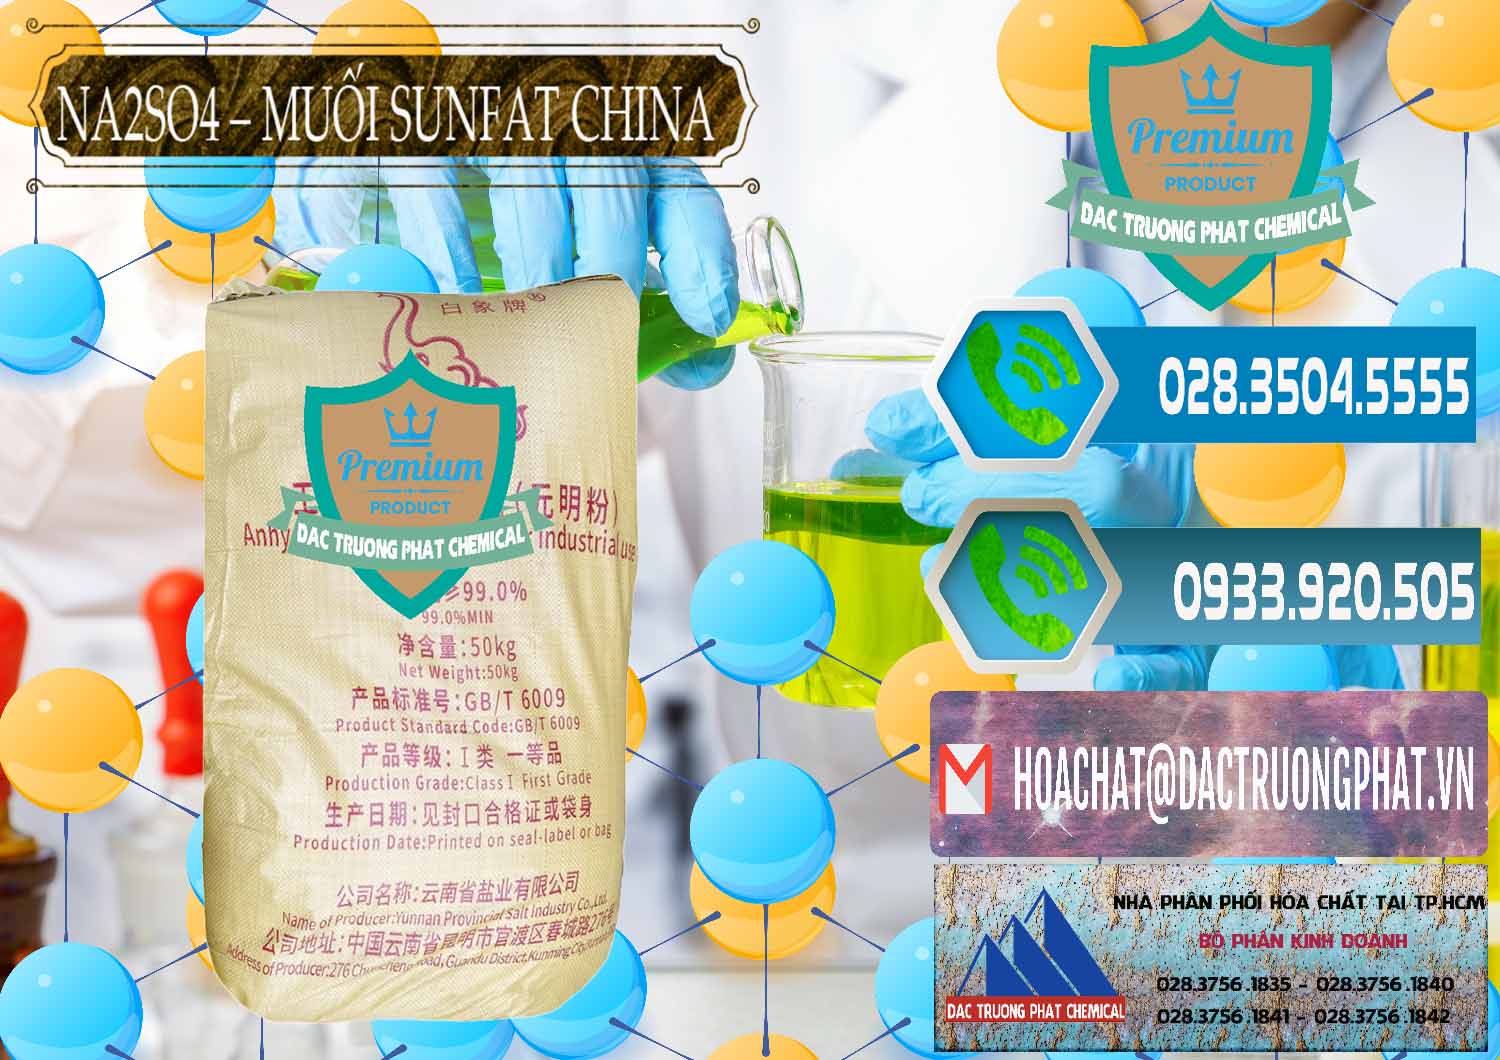 Cty chuyên cung ứng & bán Sodium Sulphate - Muối Sunfat Na2SO4 Logo Con Voi Trung Quốc China - 0409 - Đơn vị chuyên cung cấp ( bán ) hóa chất tại TP.HCM - congtyhoachat.net